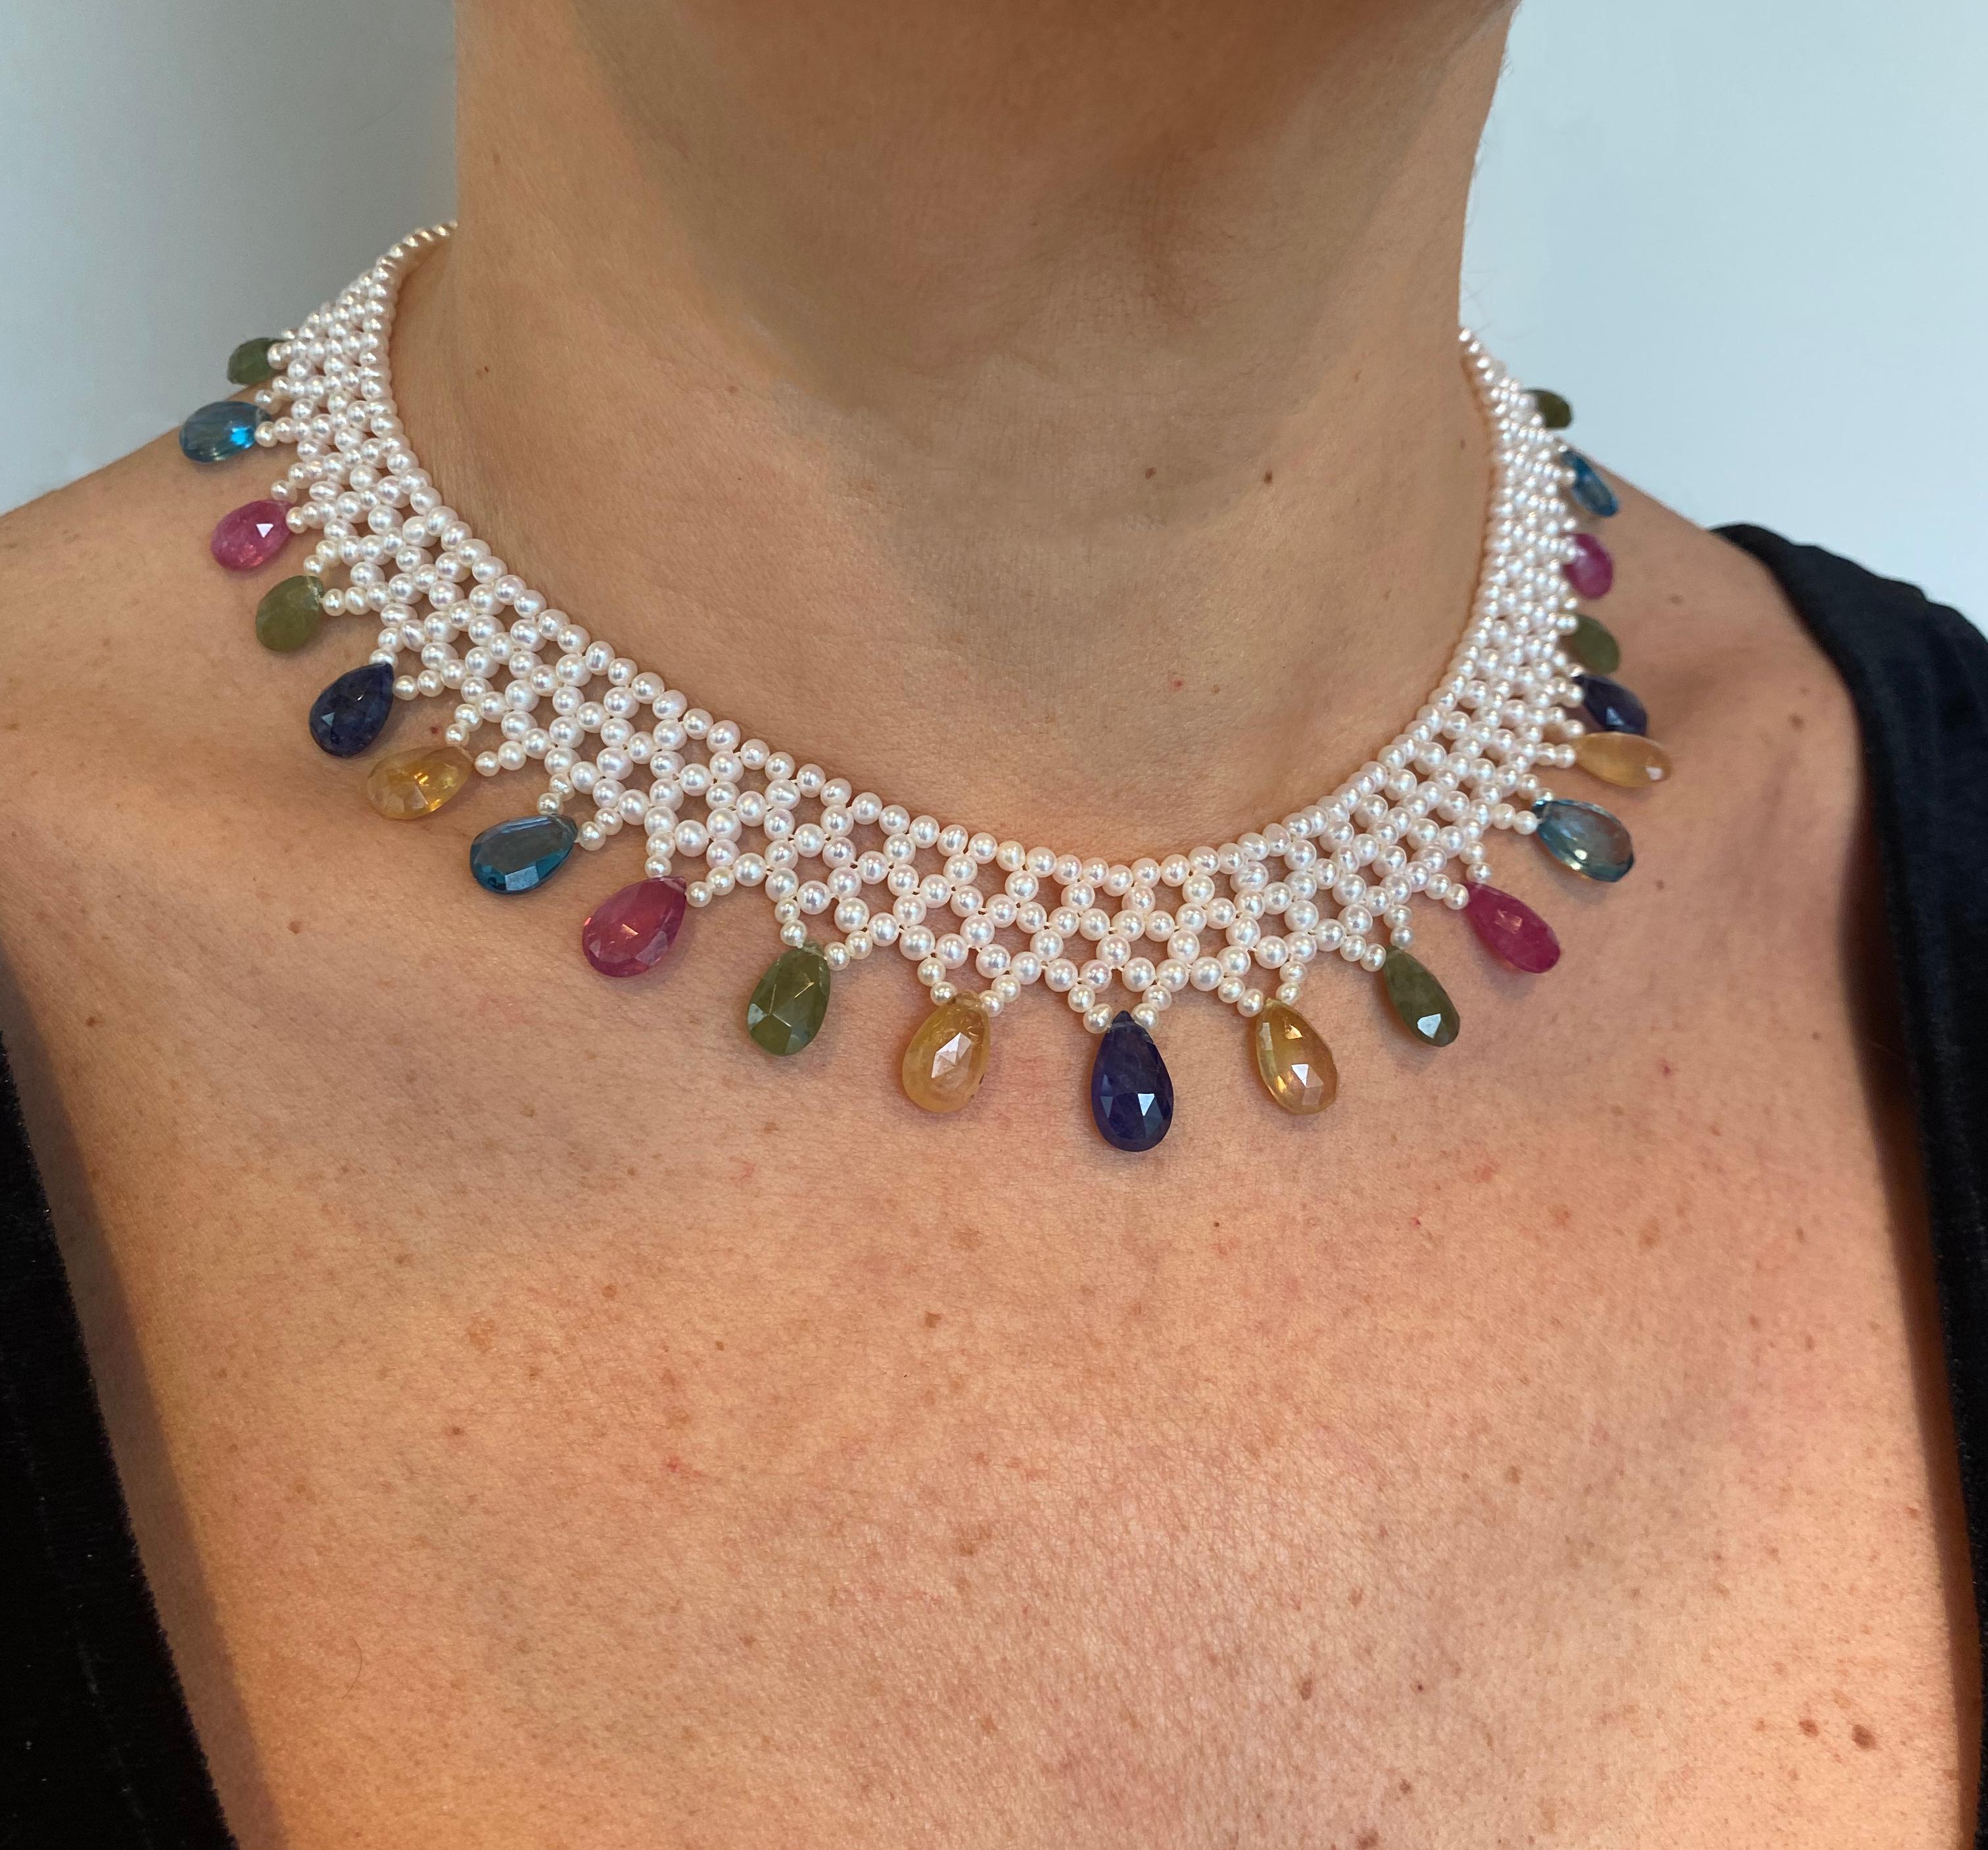 Briolette Cut Marina J. Pearl Woven Necklace w Multi Semi Precious Stones and 14k Yellow Gold For Sale